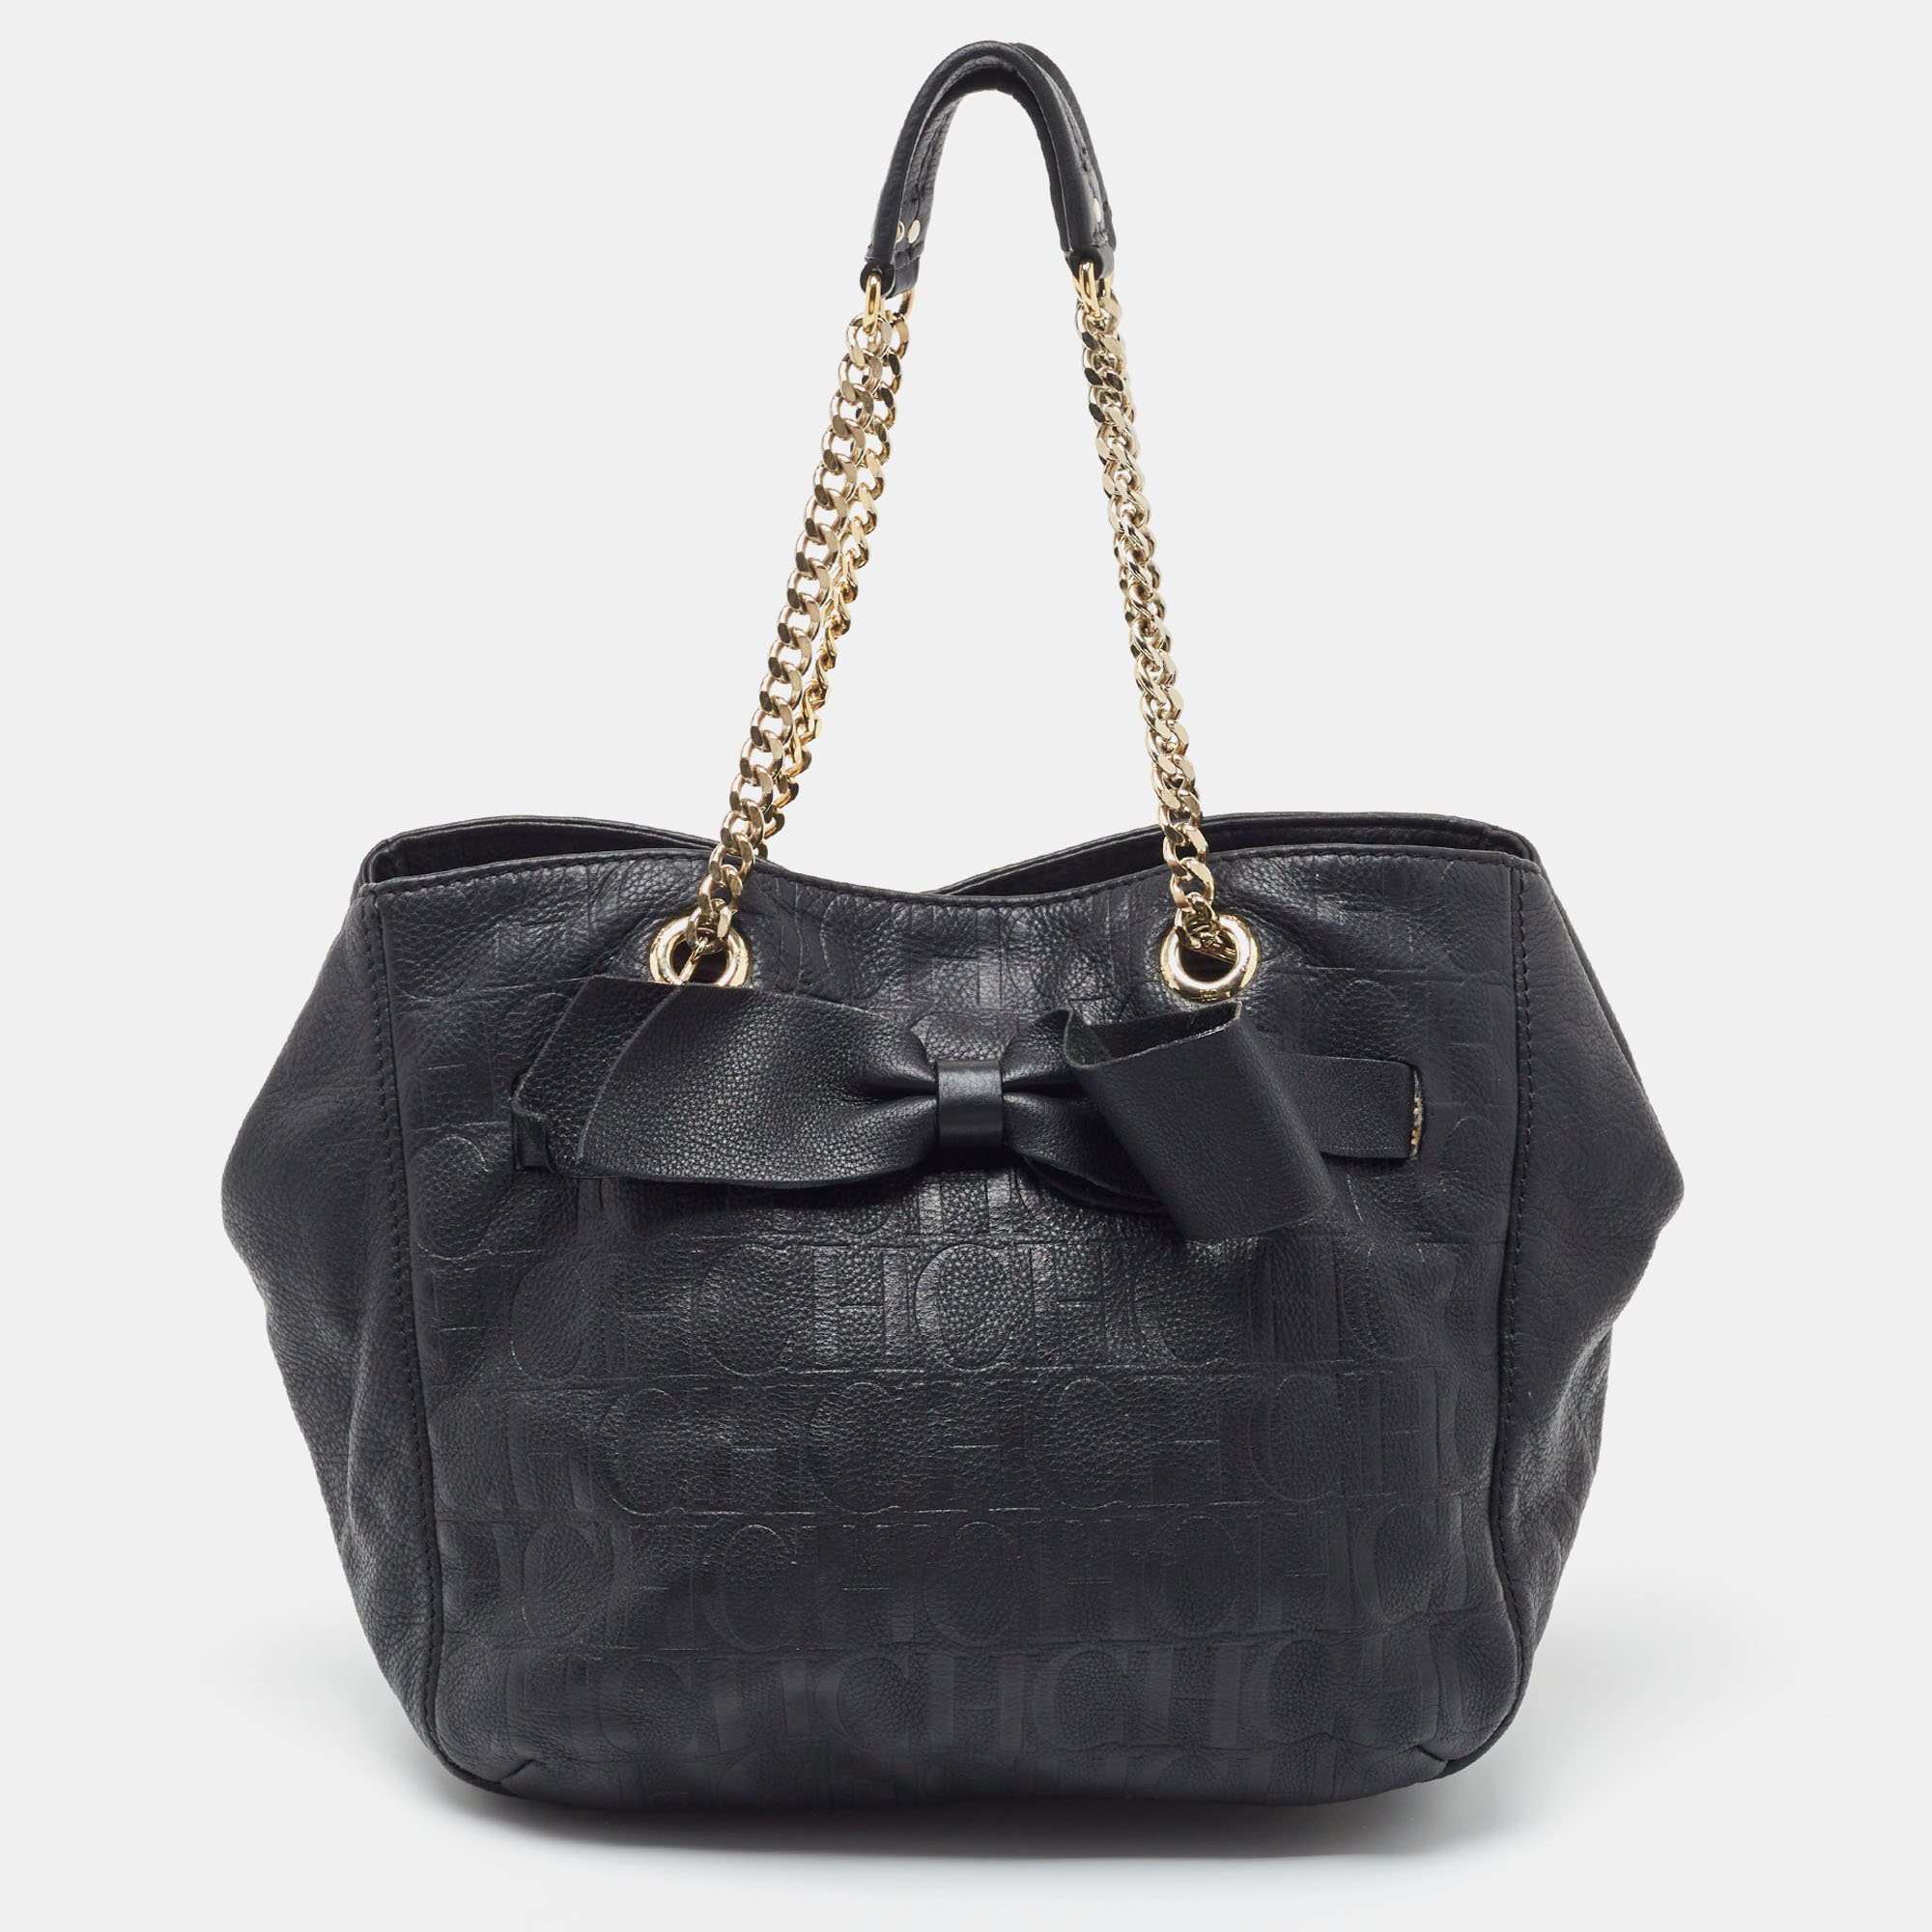 Pre-owned Carolina Herrera Black Leather Audrey Shoulder Bag